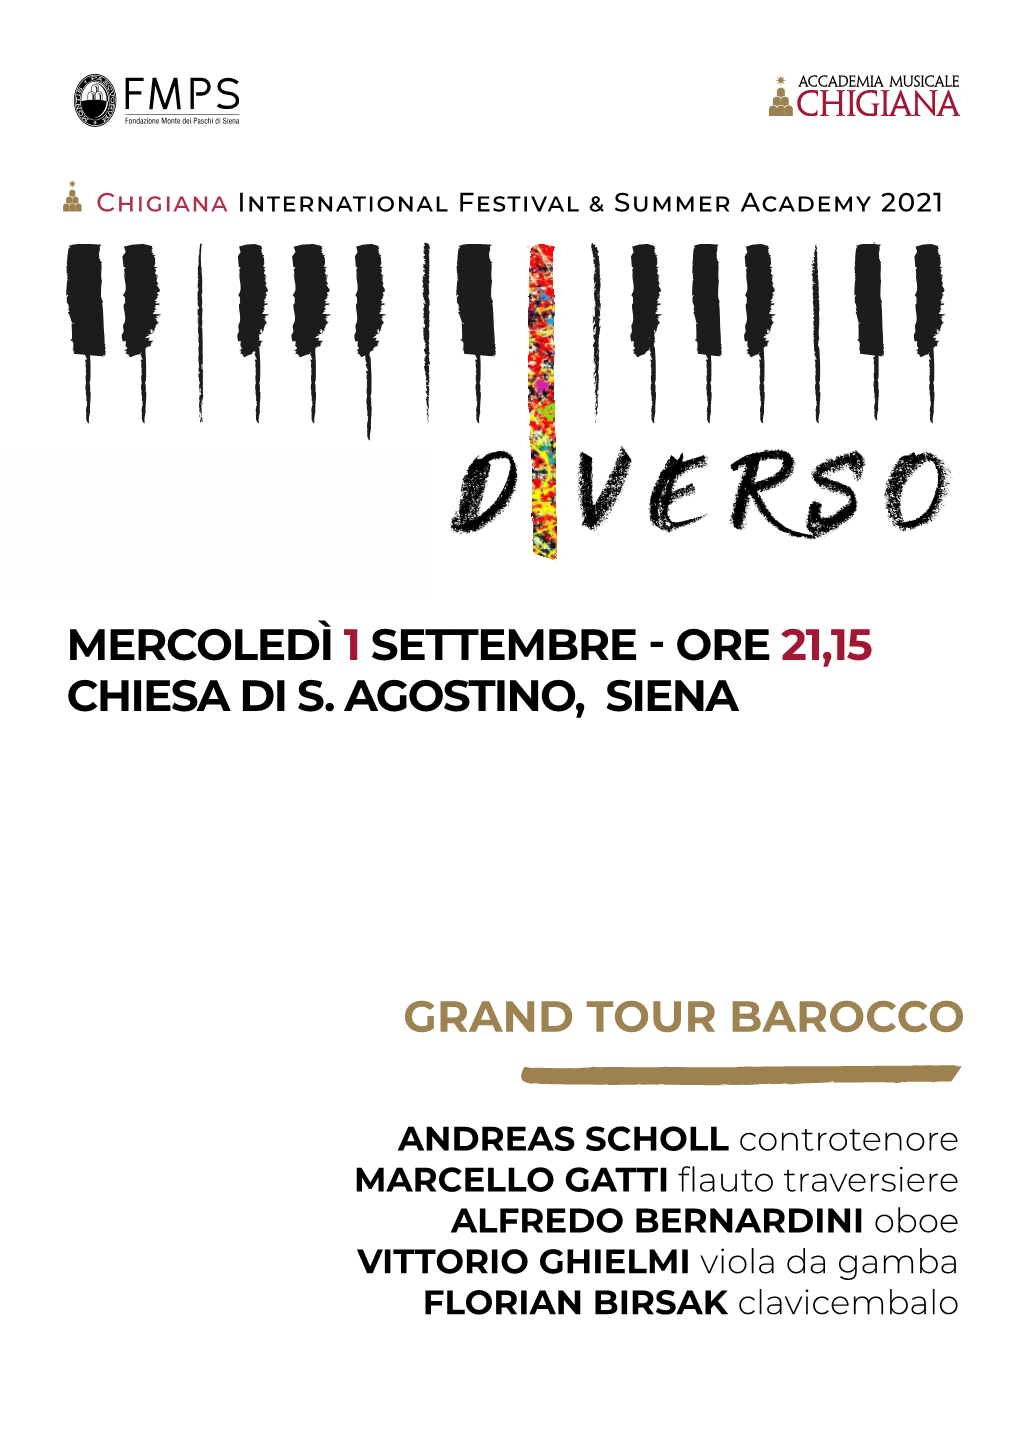 Grand Tour Barocco Mercoledì 1 Settembre